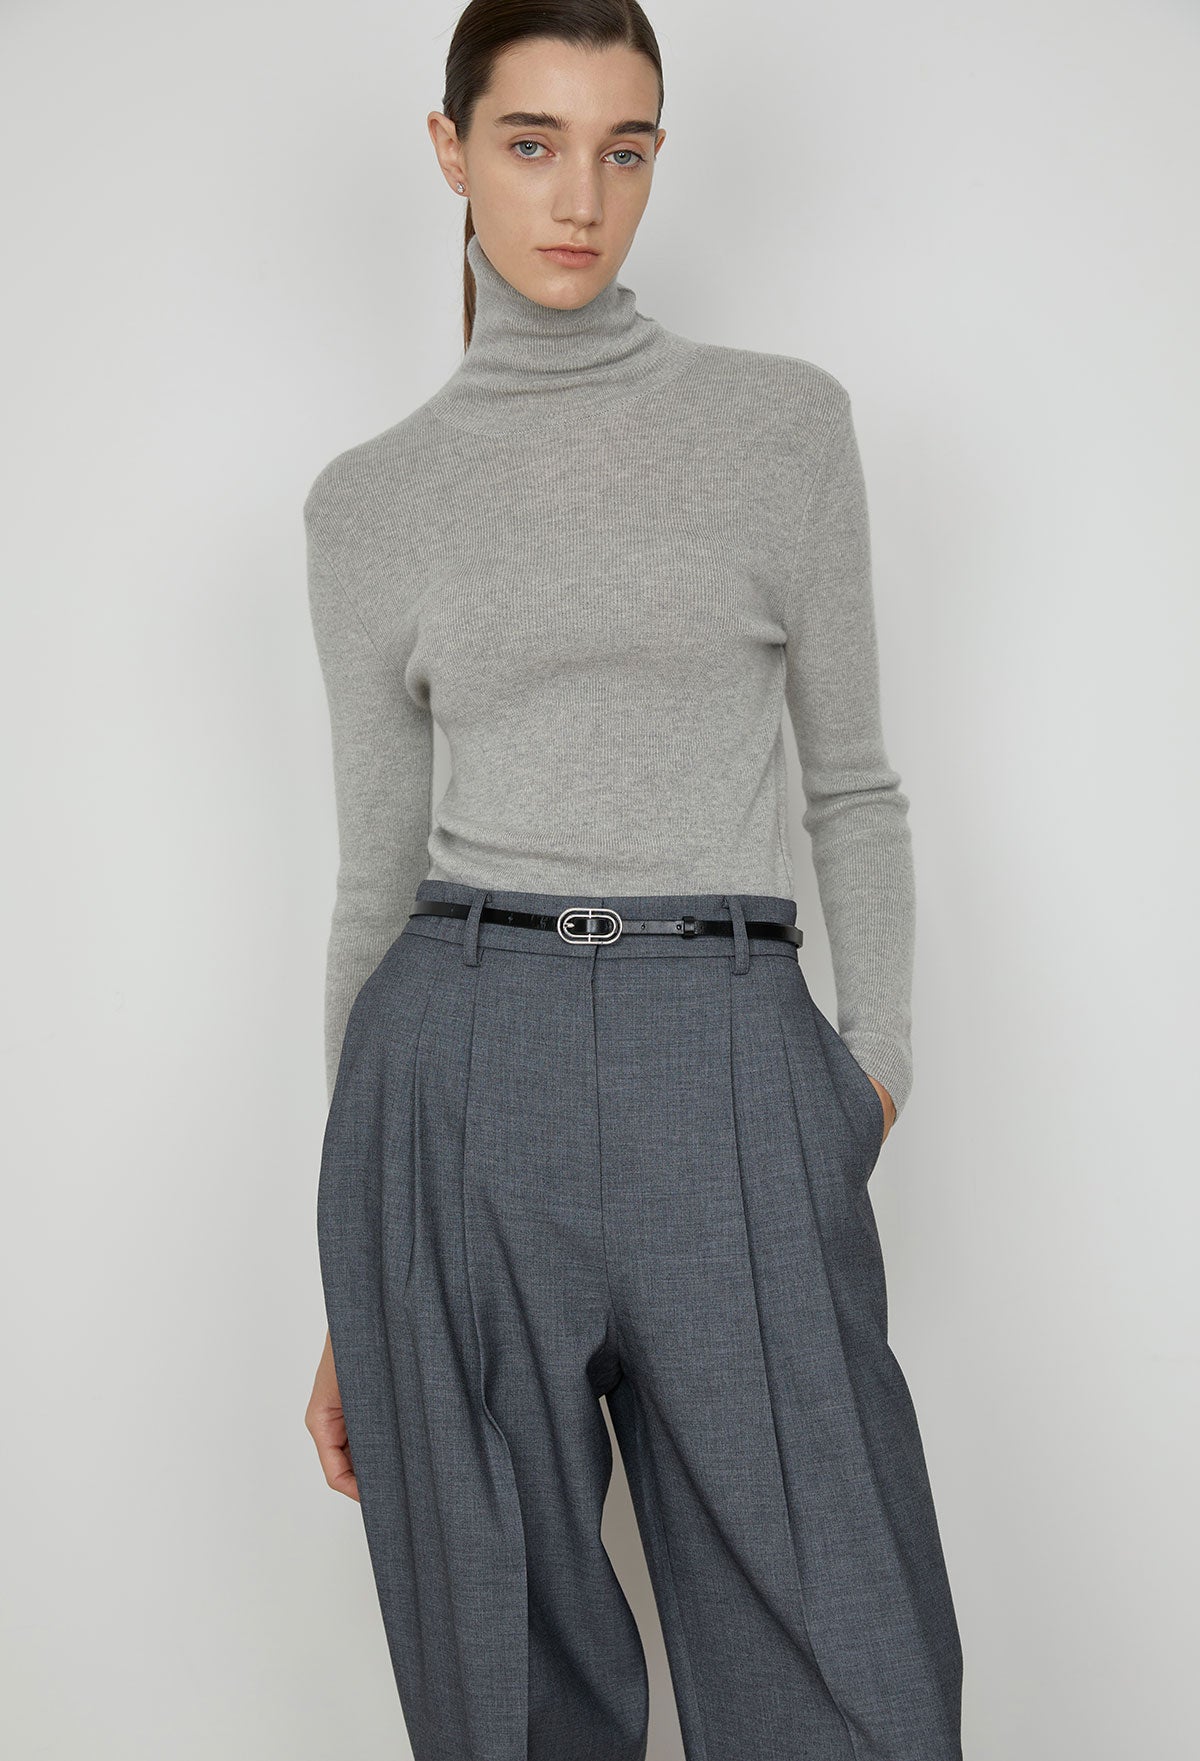 Essential Wool Turtleneck Knitted Top In Melange Gray